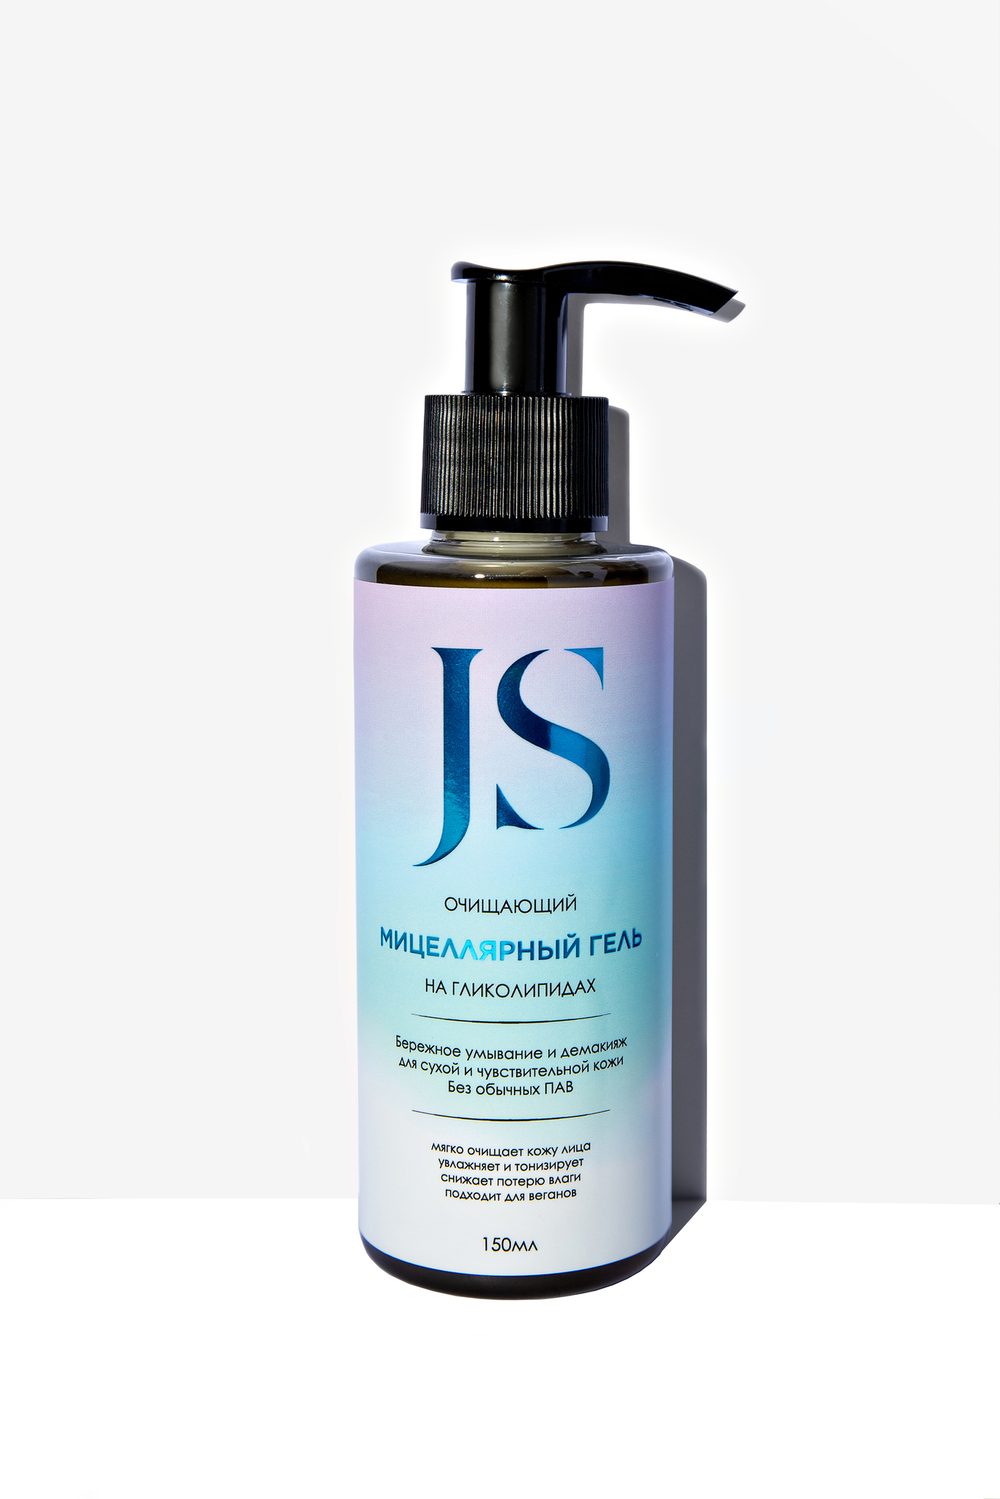 JS Очищающий мицеллярный гель на гликолипидах для сухой и чувствительной кожи 150мл, Jurassic Spa